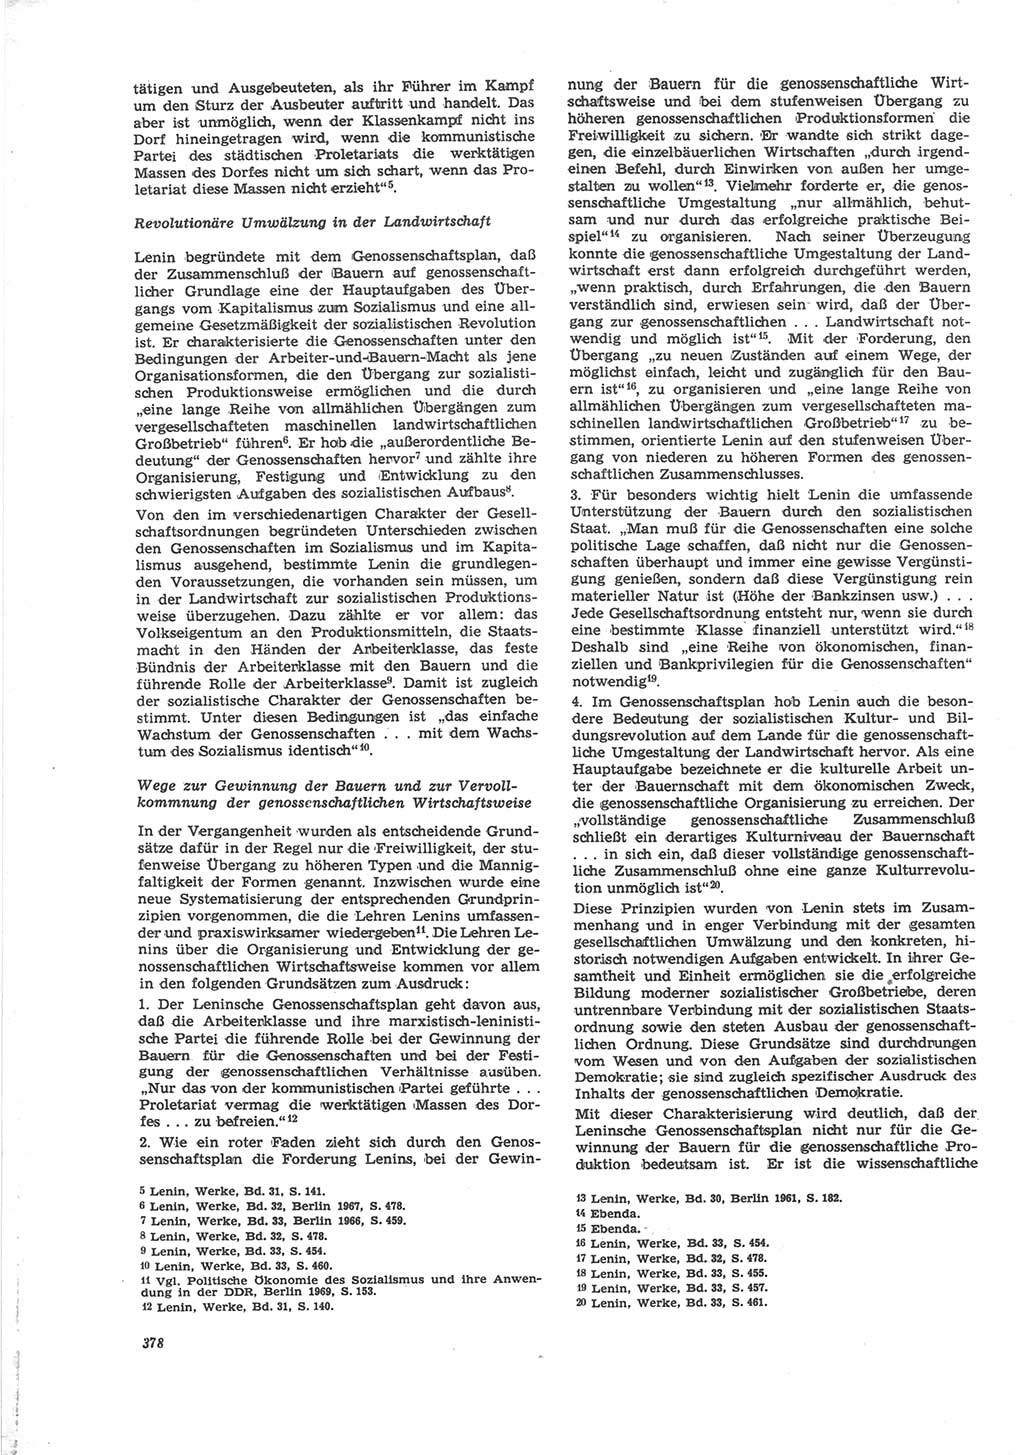 Neue Justiz (NJ), Zeitschrift für Recht und Rechtswissenschaft [Deutsche Demokratische Republik (DDR)], 24. Jahrgang 1970, Seite 378 (NJ DDR 1970, S. 378)